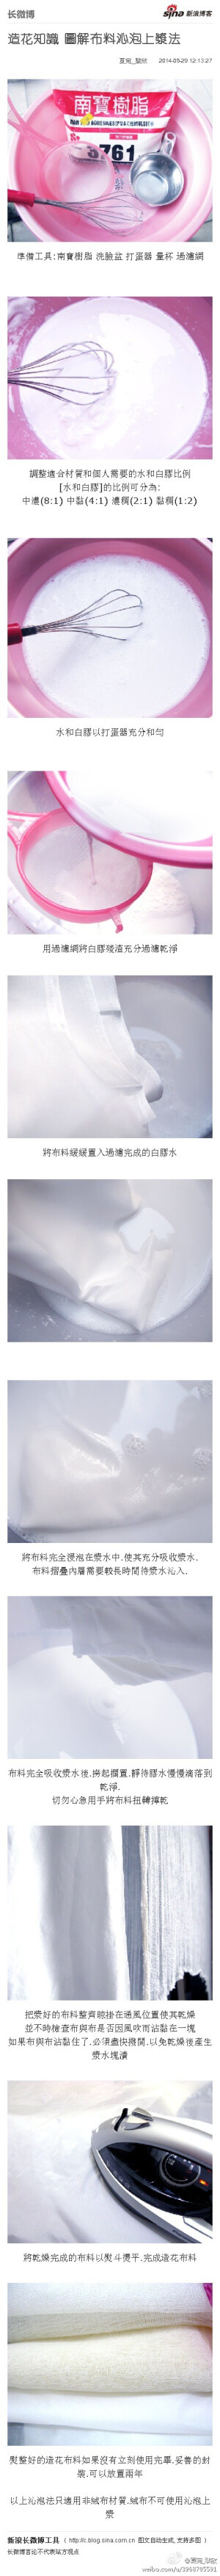 造花知識 圖解布料沁泡上漿法： 準備工具:南寶樹脂 洗臉盆 打蛋器 量杯 過濾網 調整適合材質和個人需要的水和白膠比例 [水和白膠]的比例可分為: 中濃(8:1) 中黏(4:1) 濃稠(2:1) 黏稠(1:2) 水和...文字版&amp;gt;&amp;gt; http://t.cn/Rv5ZLhI （新浪长微博&amp;gt;&amp;gt; http://t.cn/zOXAaic）